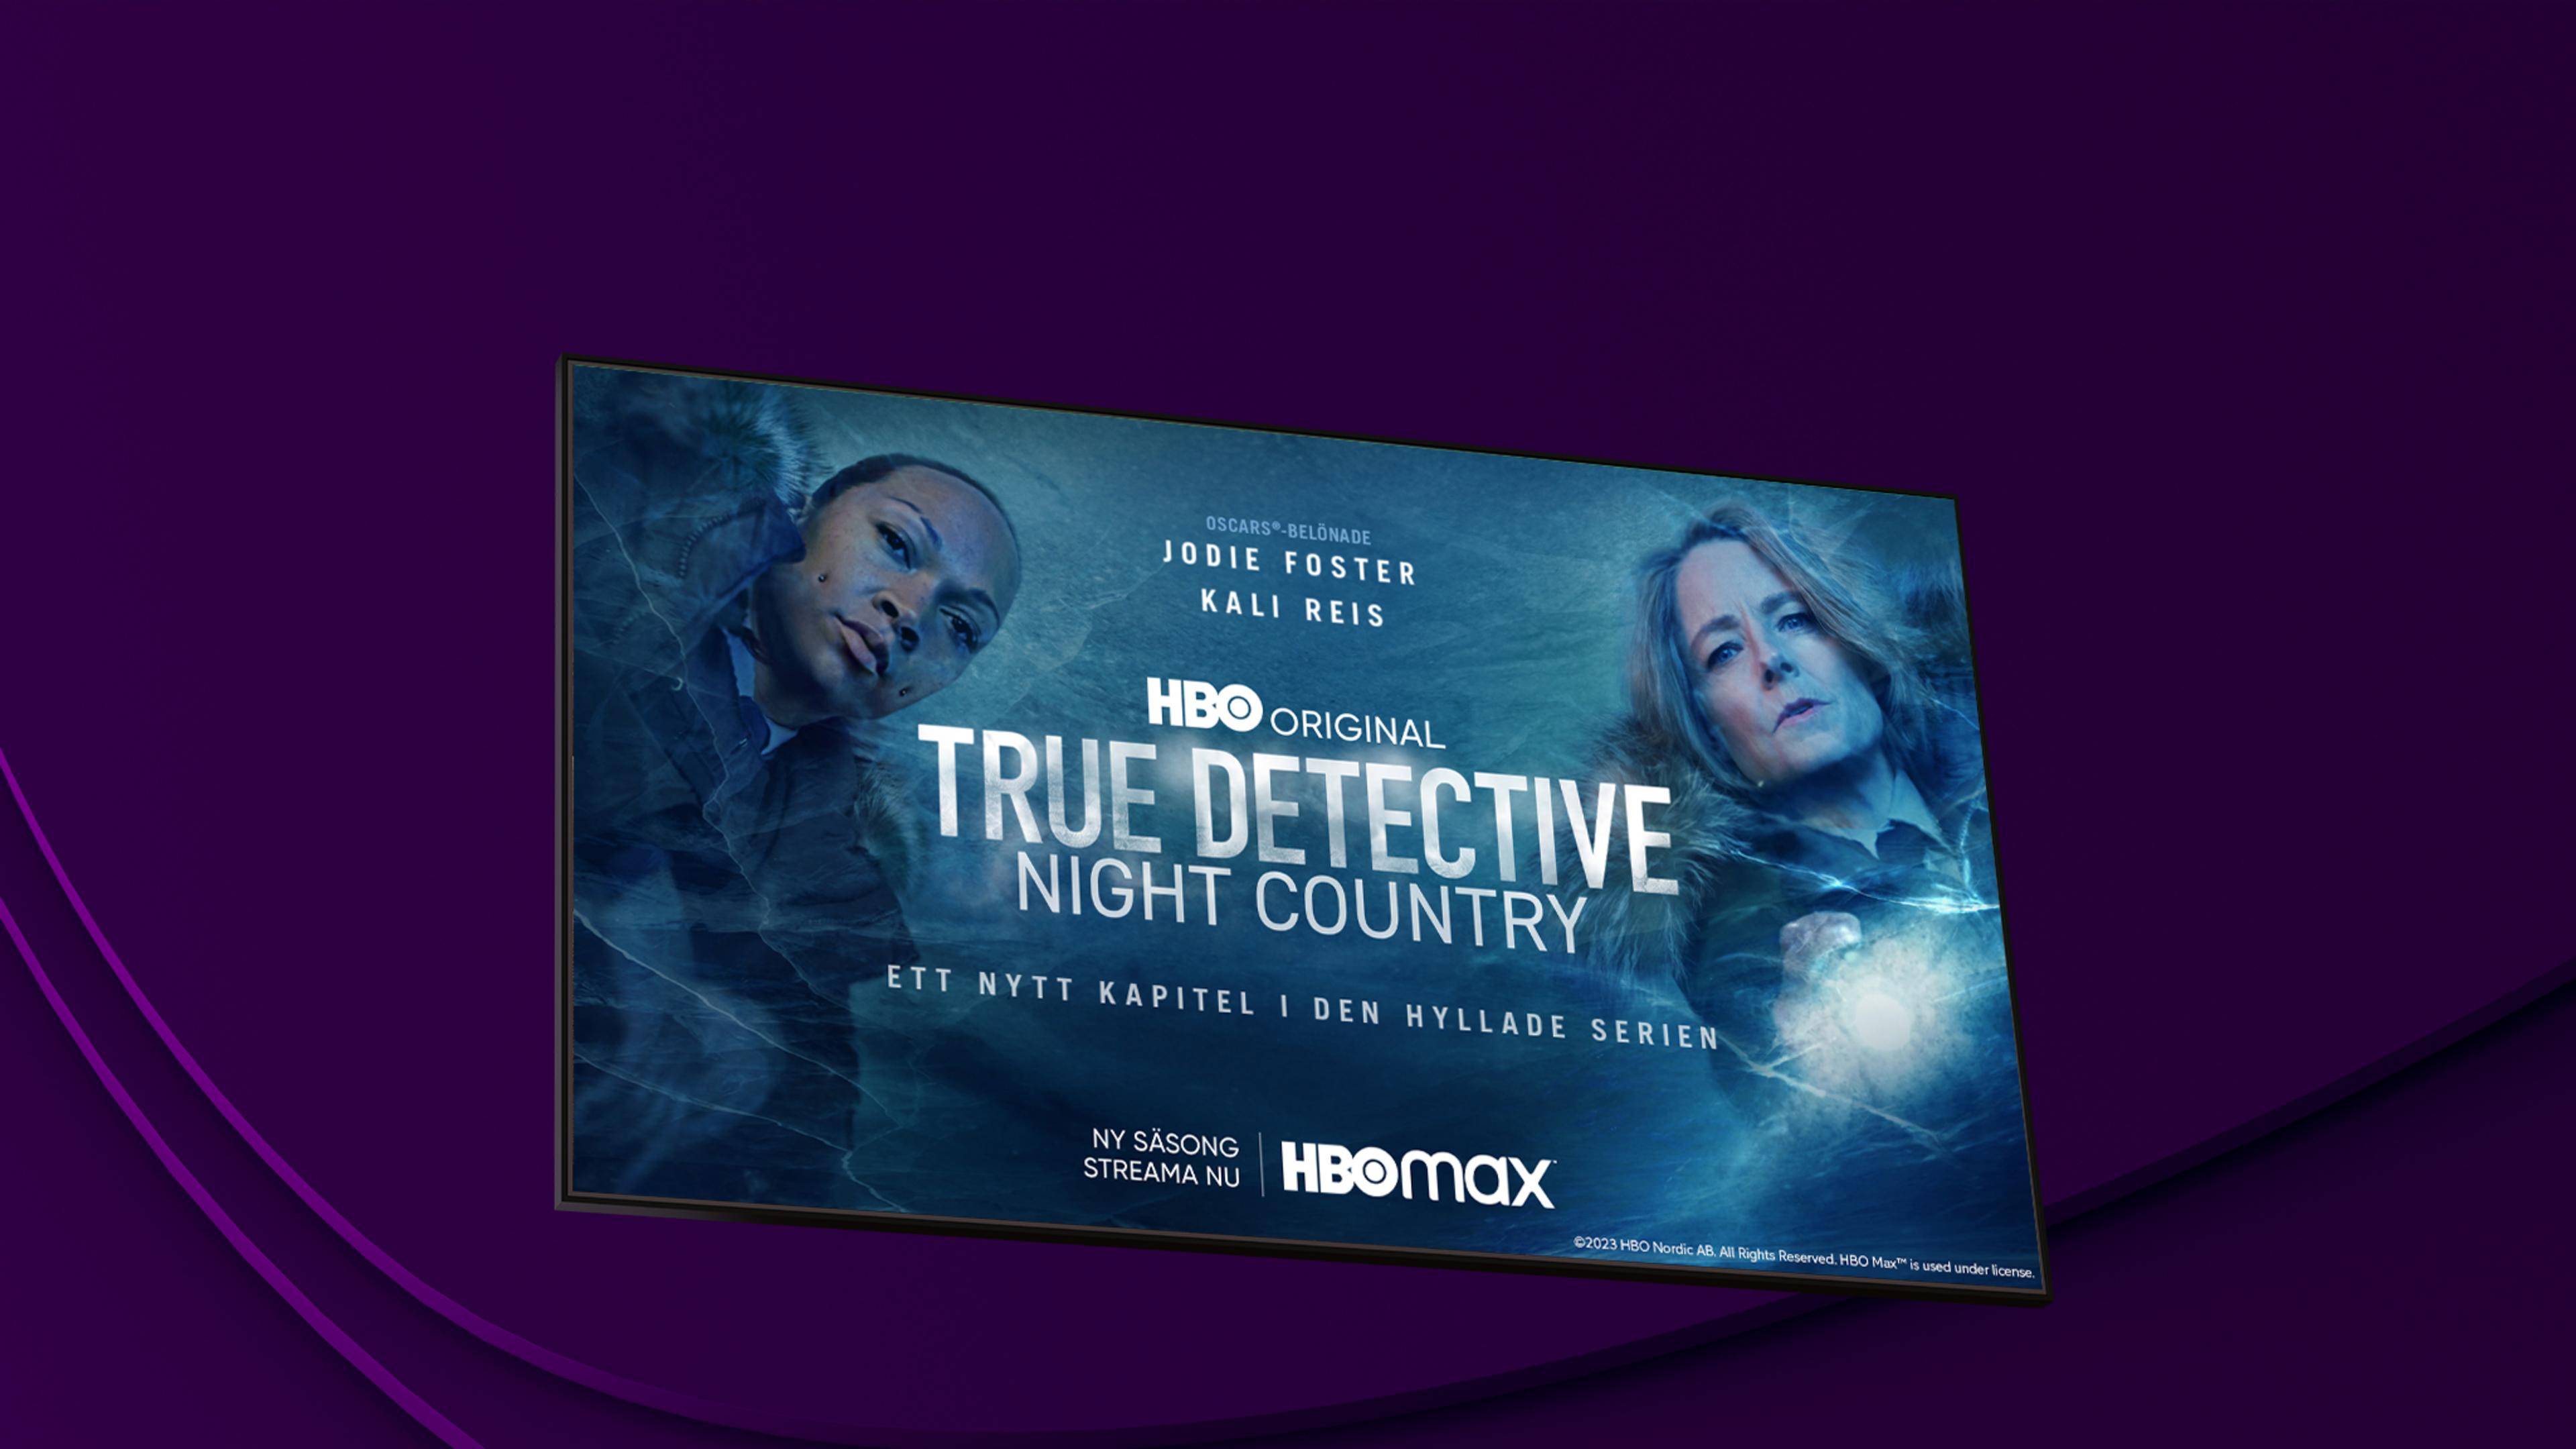 True Detective: Night Country med prisbelönade Jodie Foster och Kali Reis i huvudrollerna kan du streama på HBO Max.